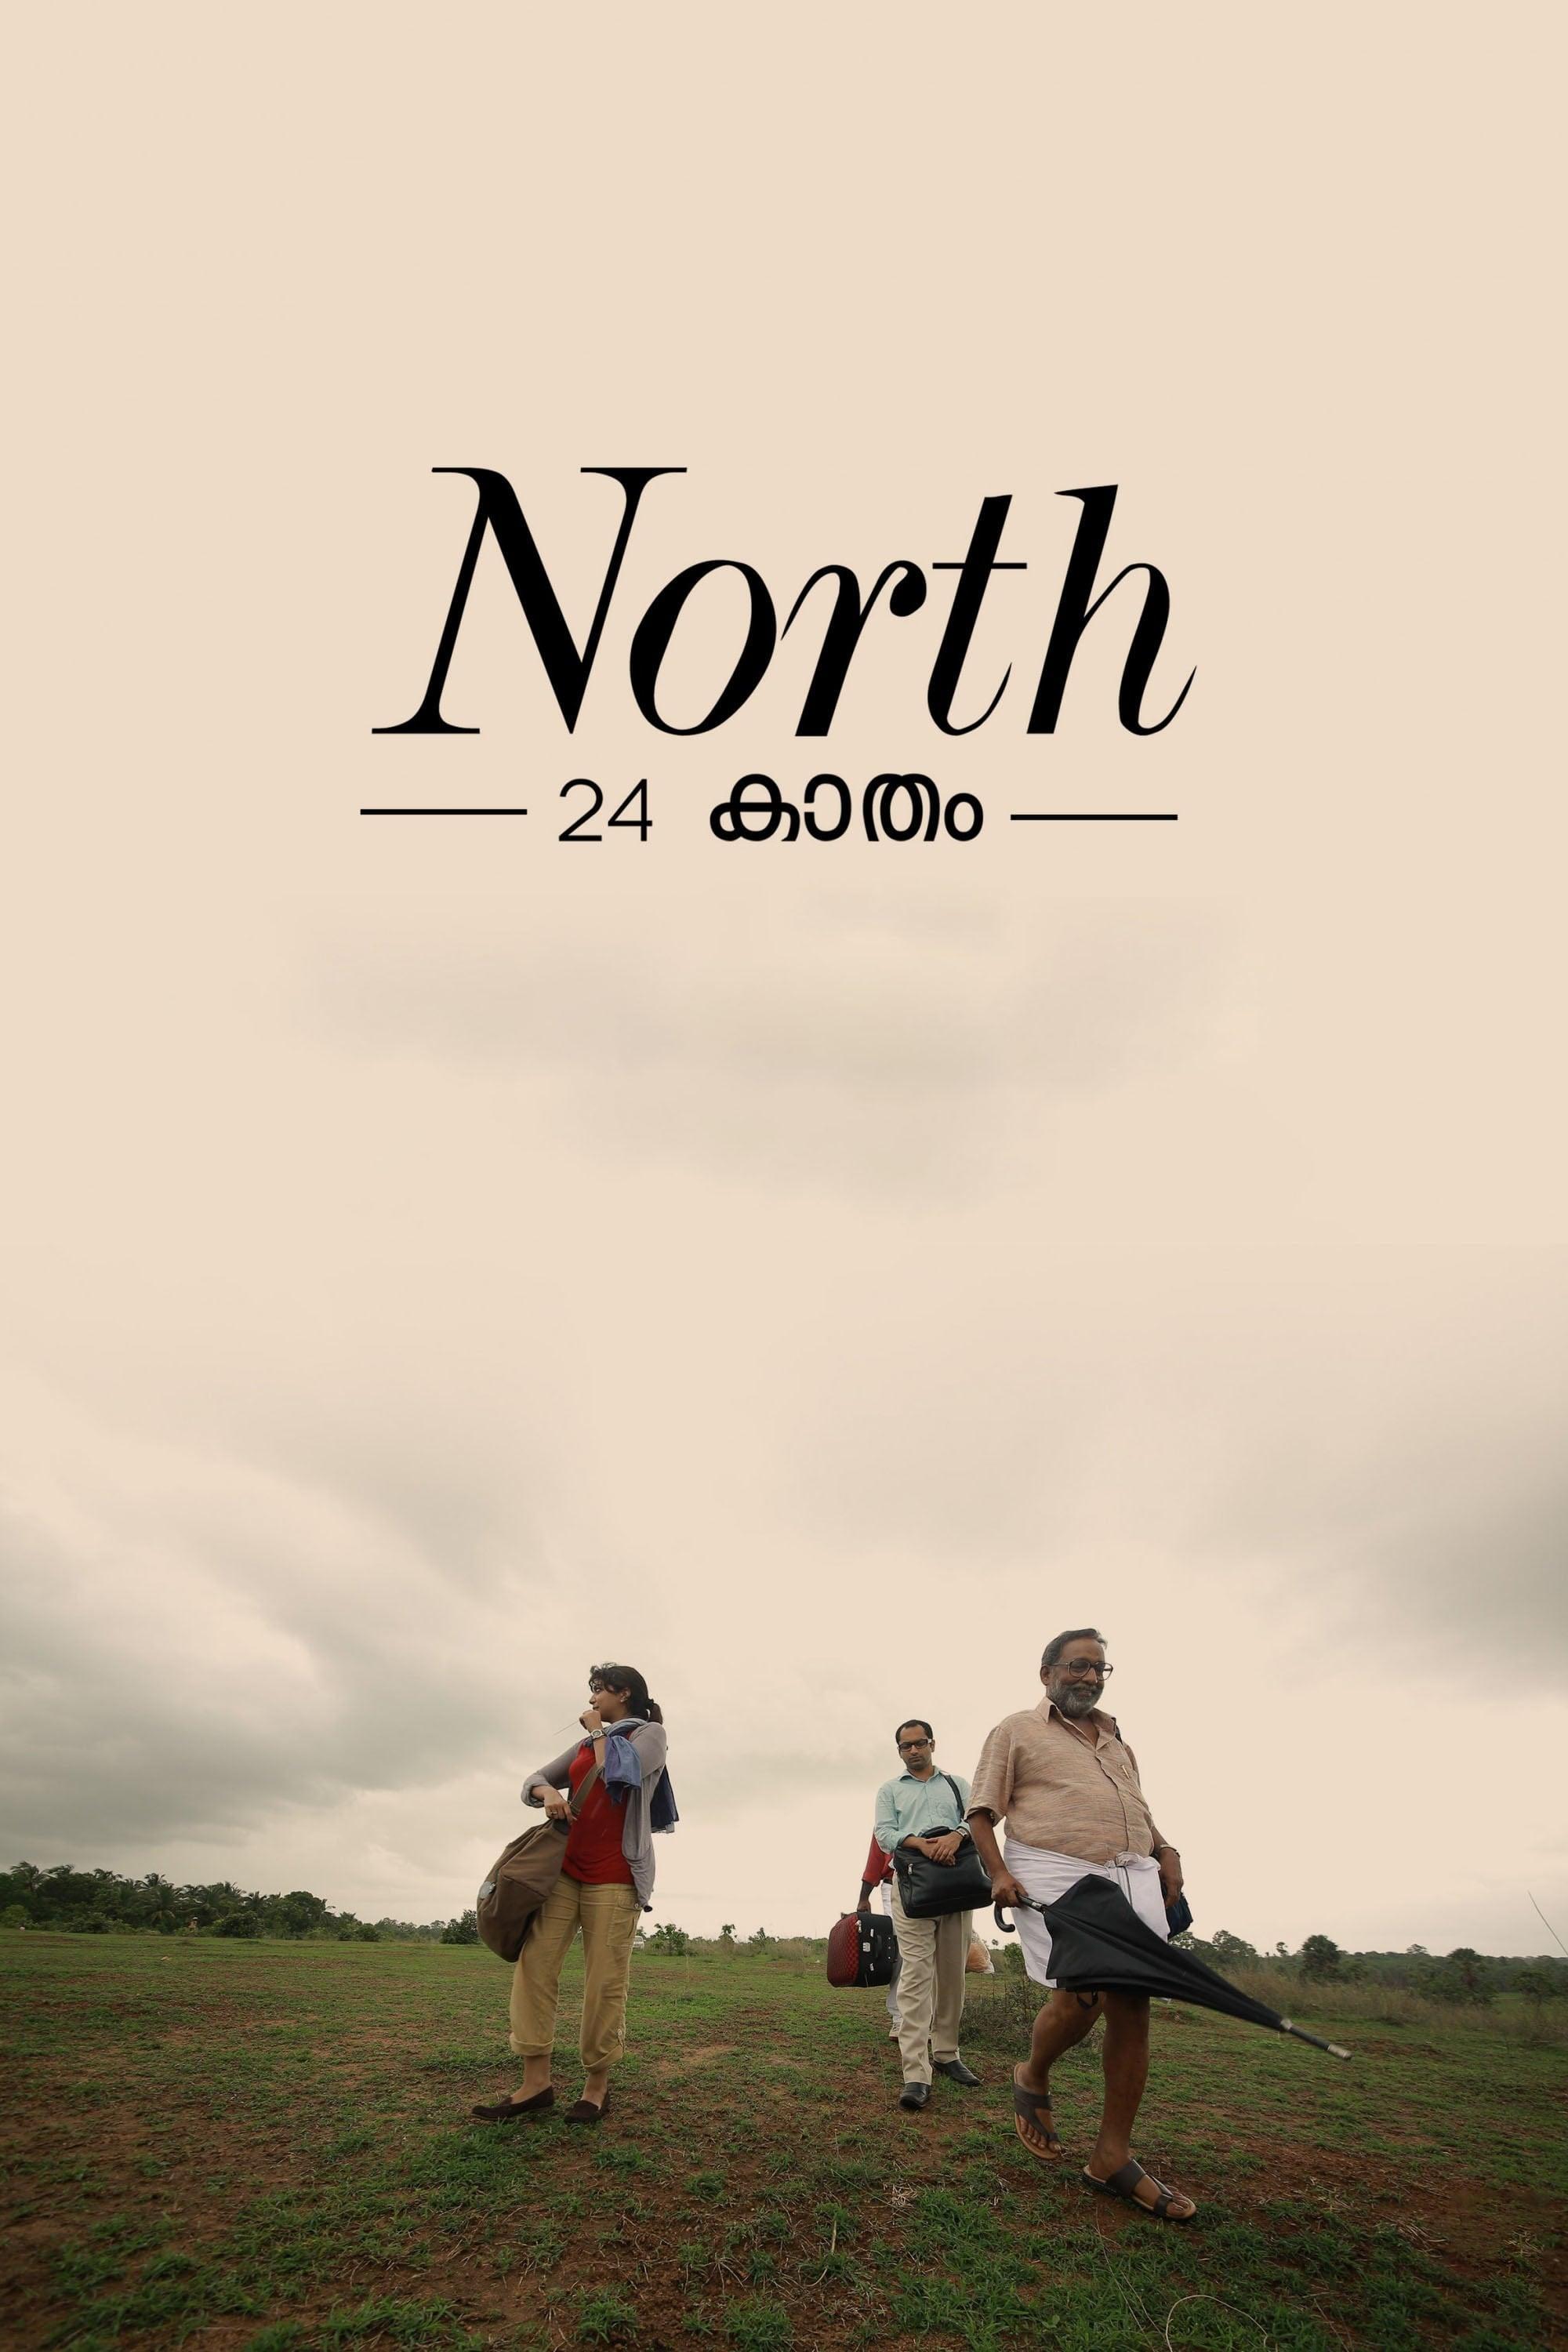 North 24 Kaatham poster